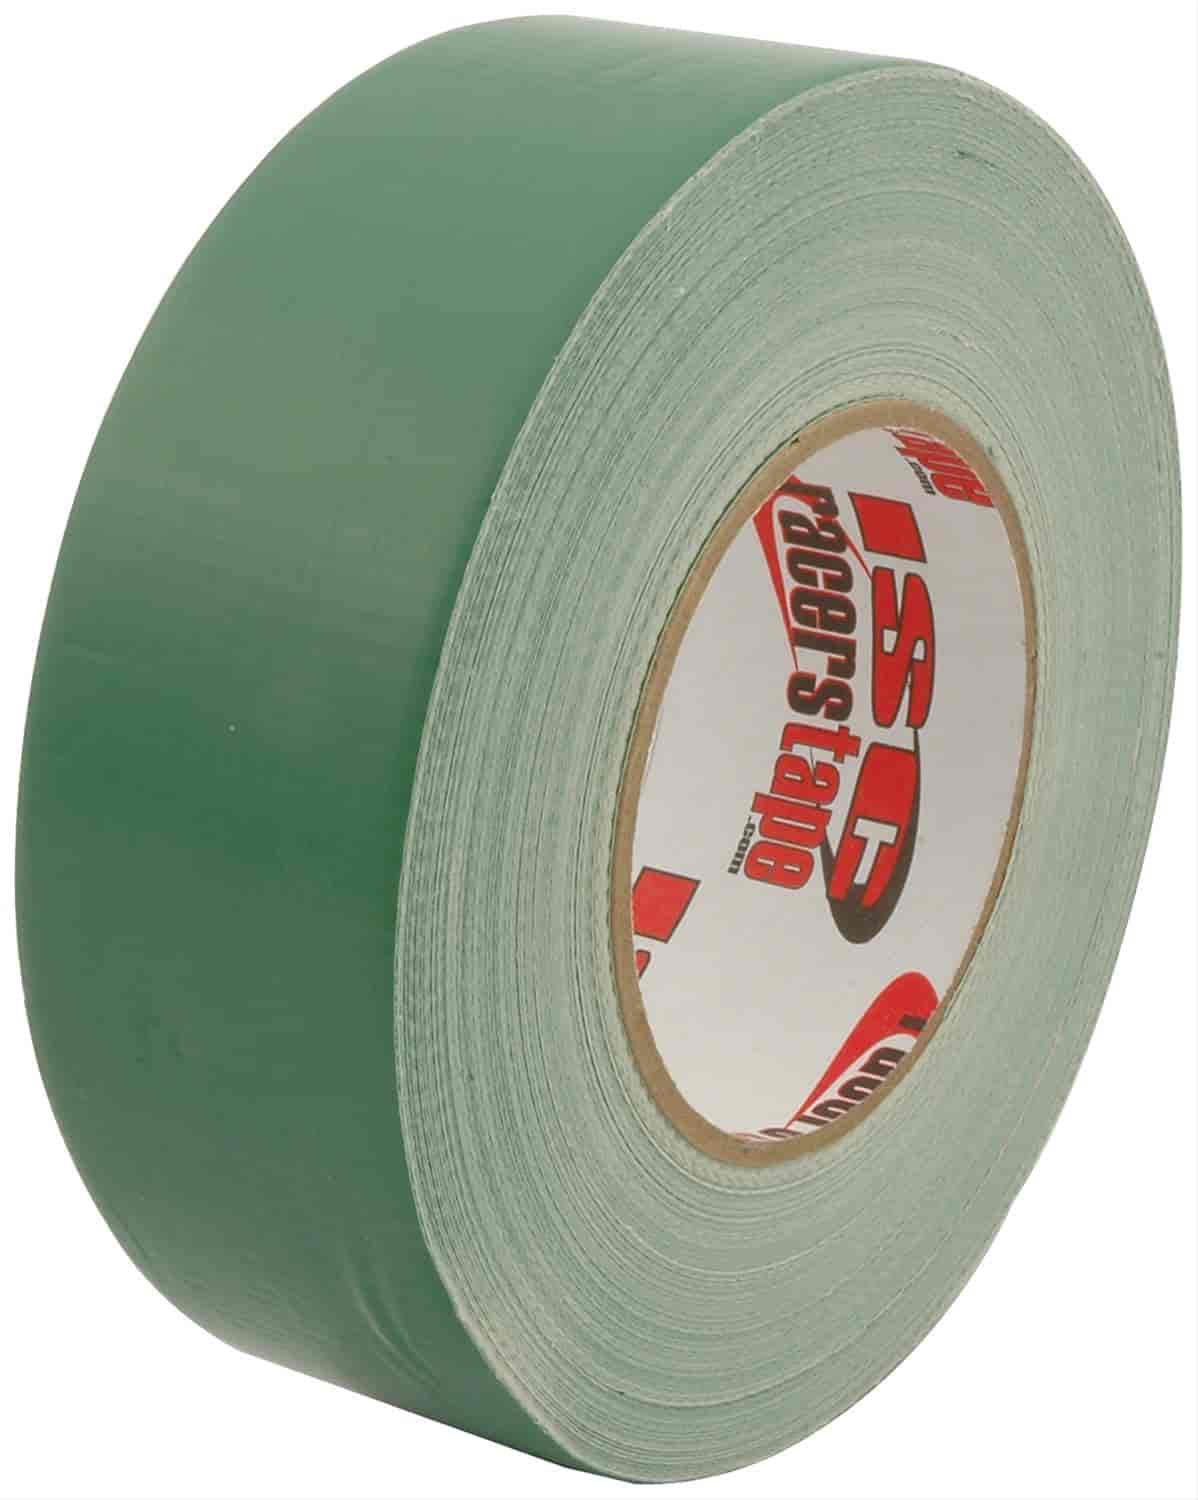 2" x 180" Racer"s Tape Green